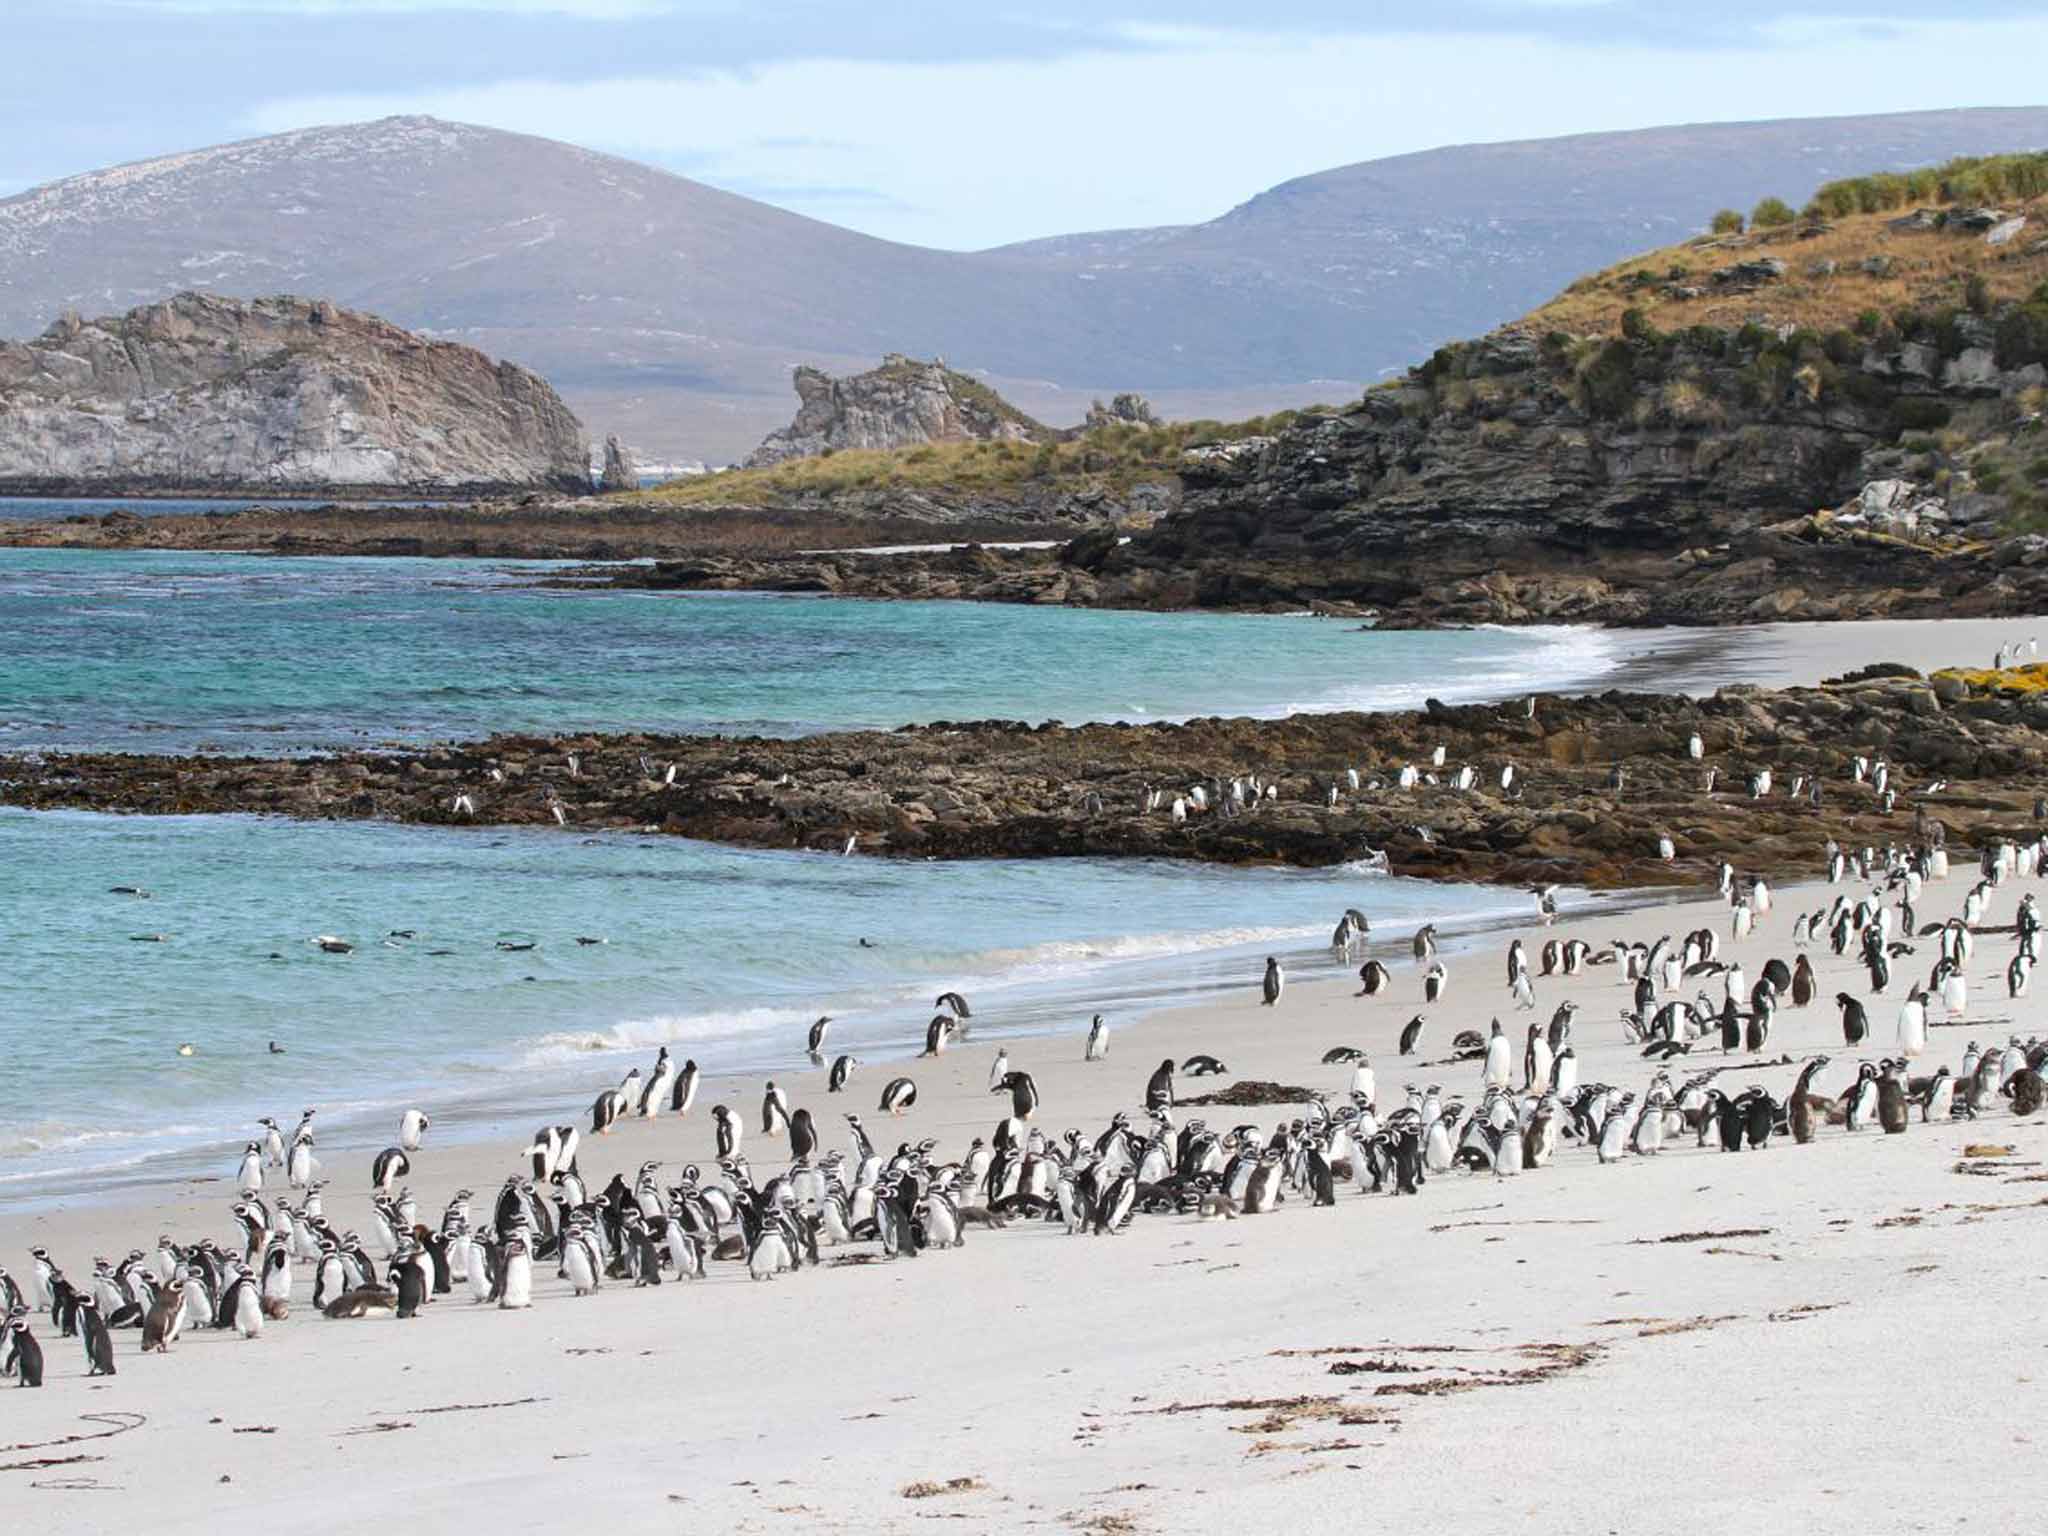 Penguins on Carcass Island